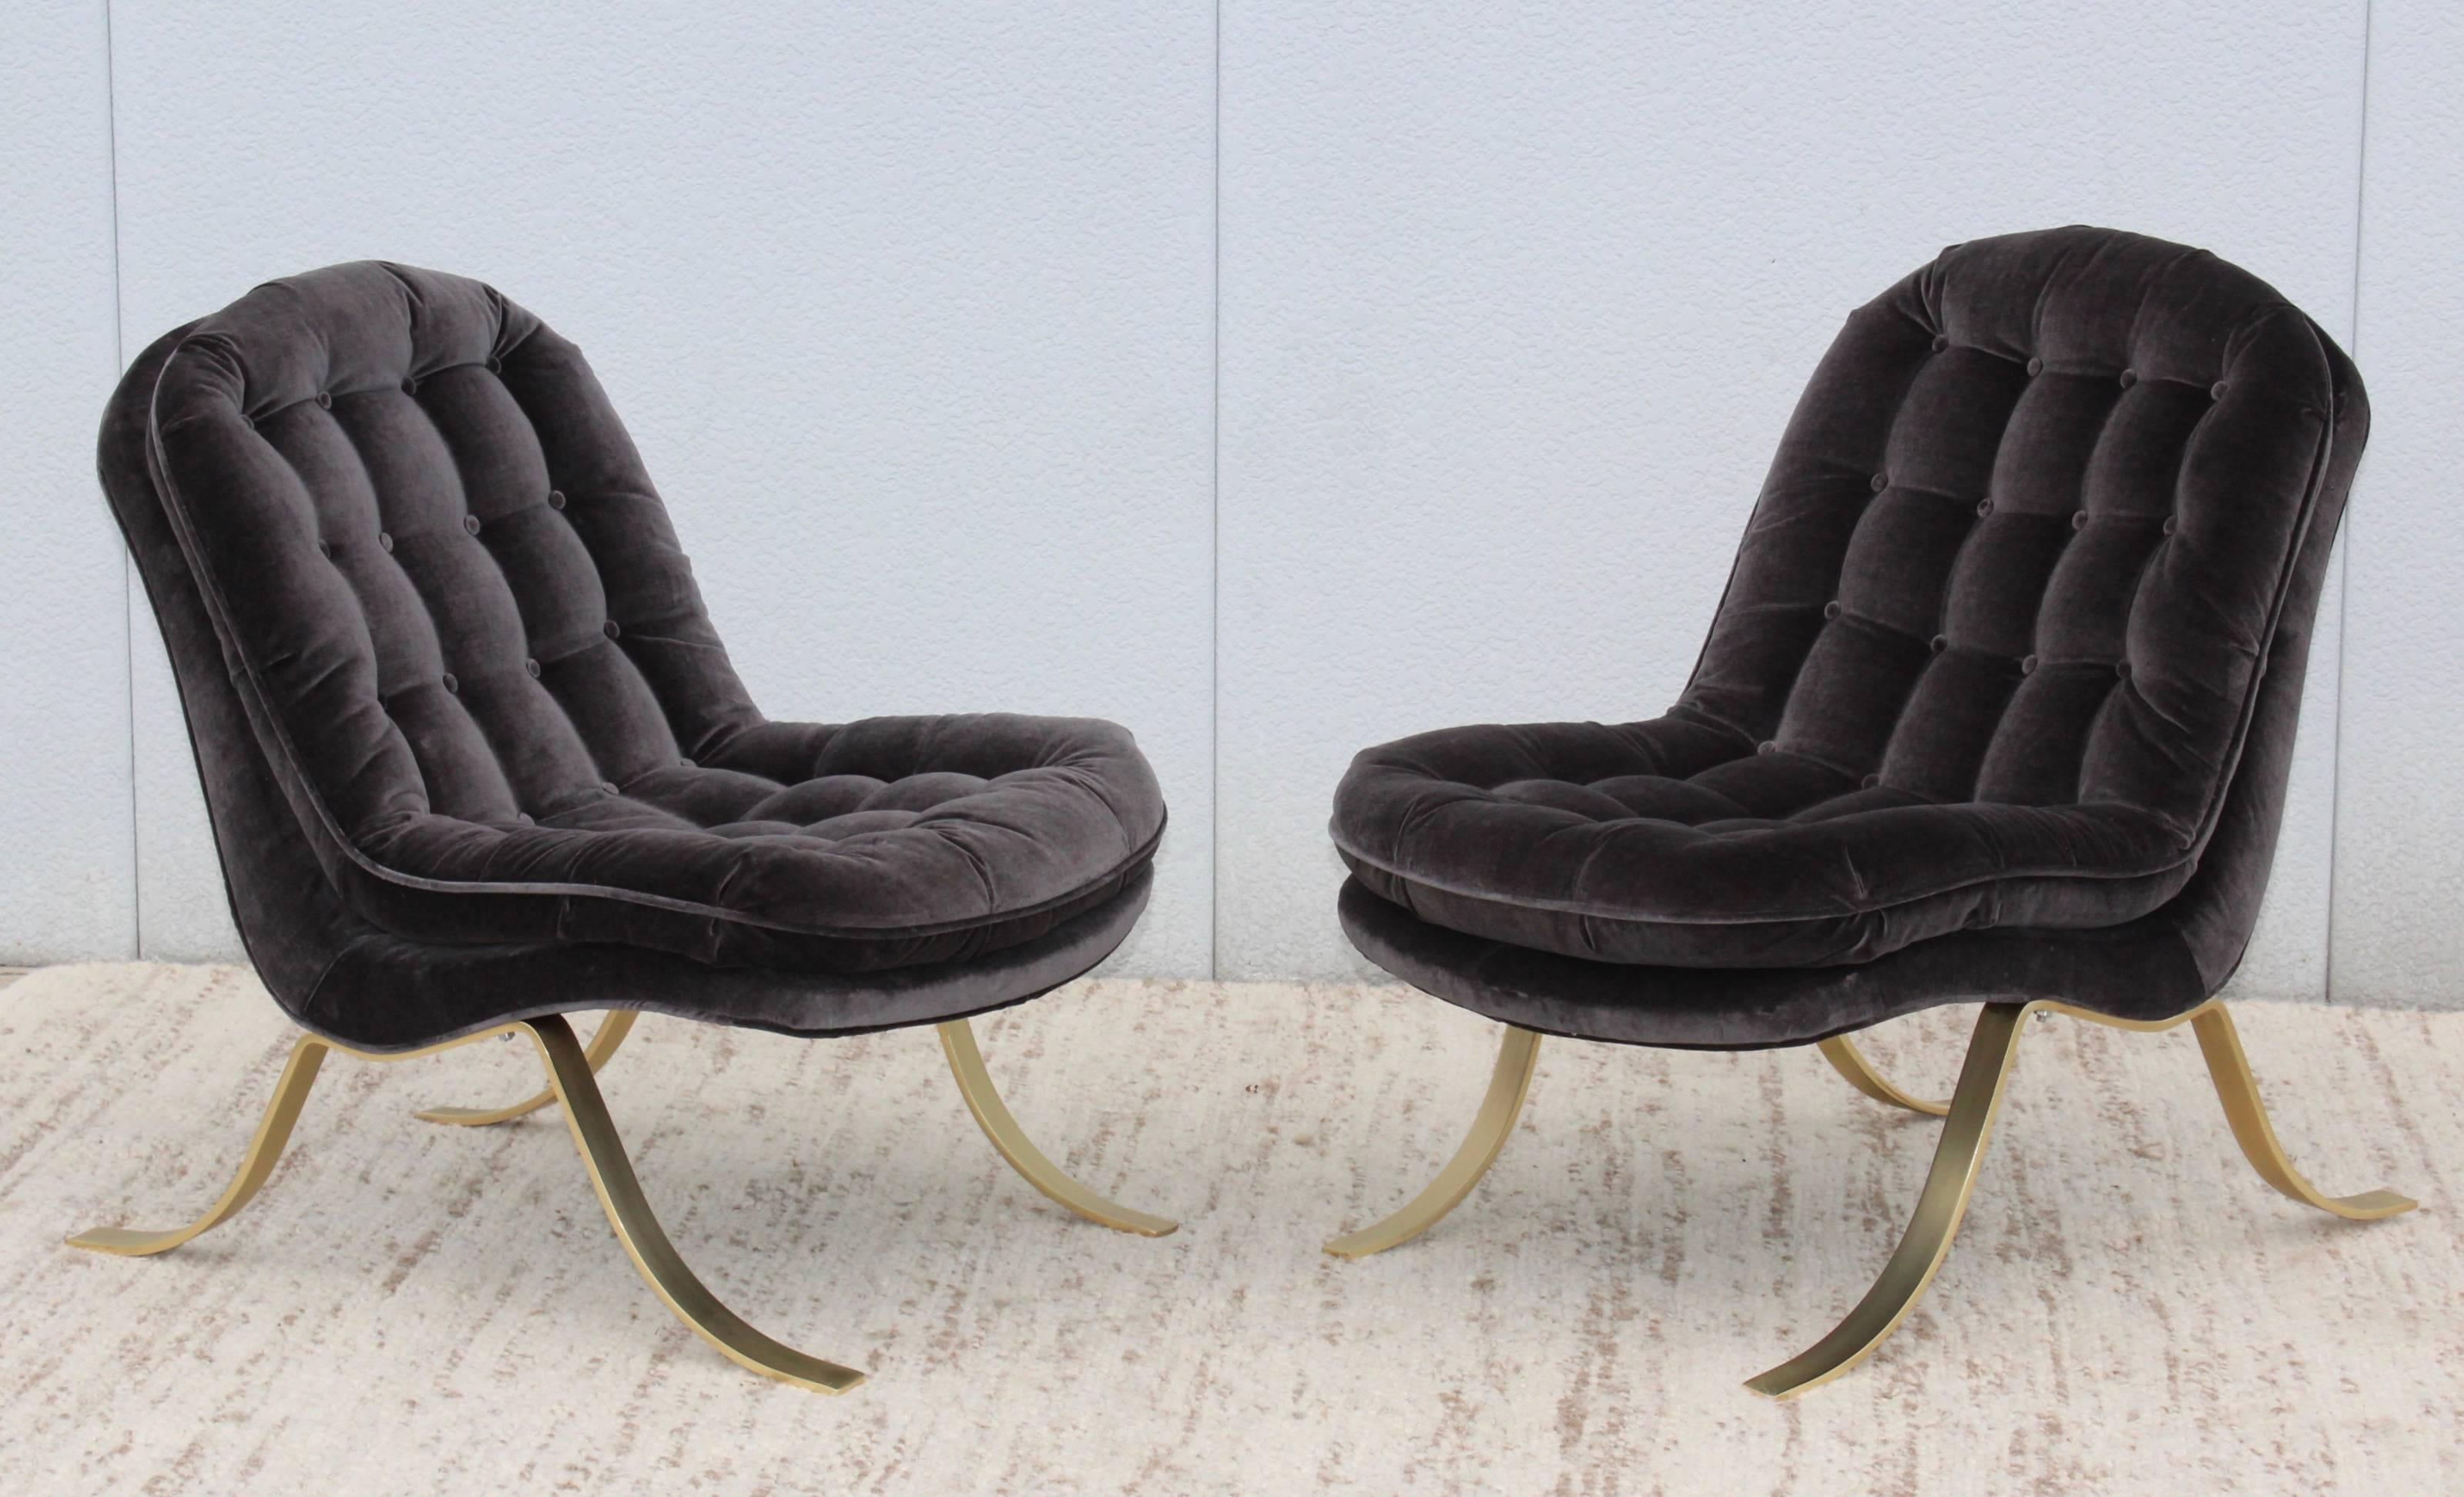 1960s modern Italian slipper chairs. With steel base and brass finish. New velvet upholstery.